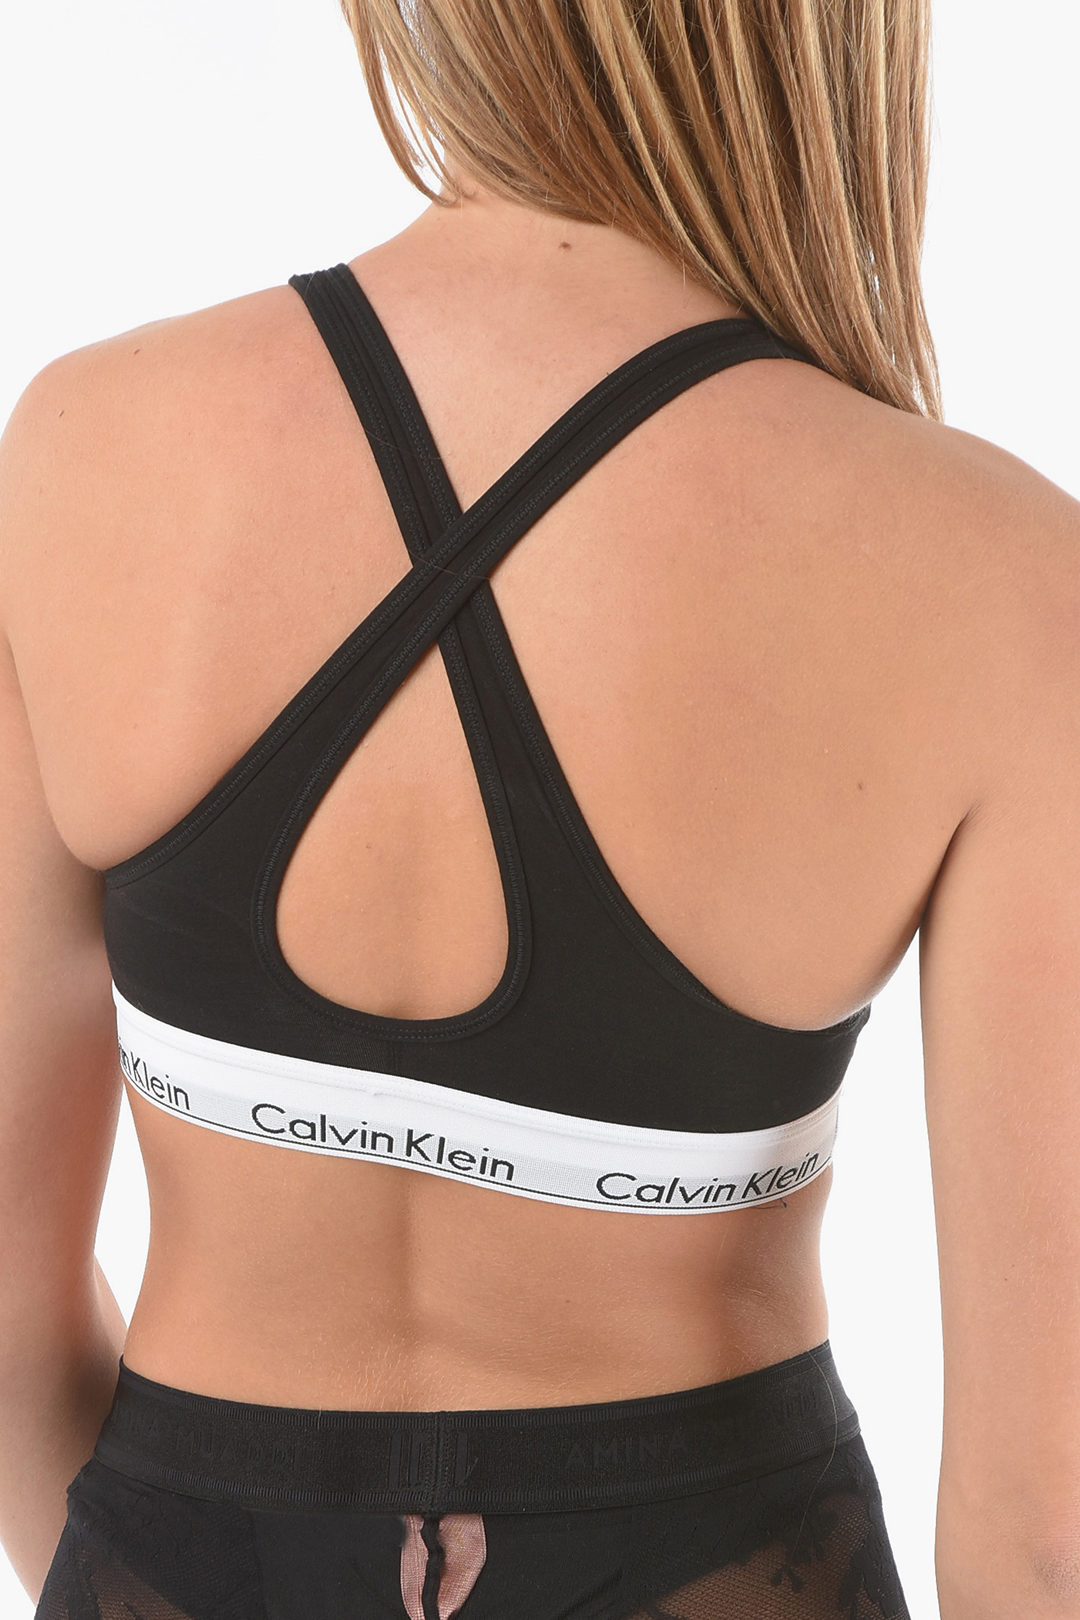 Calvin Klein Criss Cross Strap BRALETTE Padded Bra women - Glamood Outlet